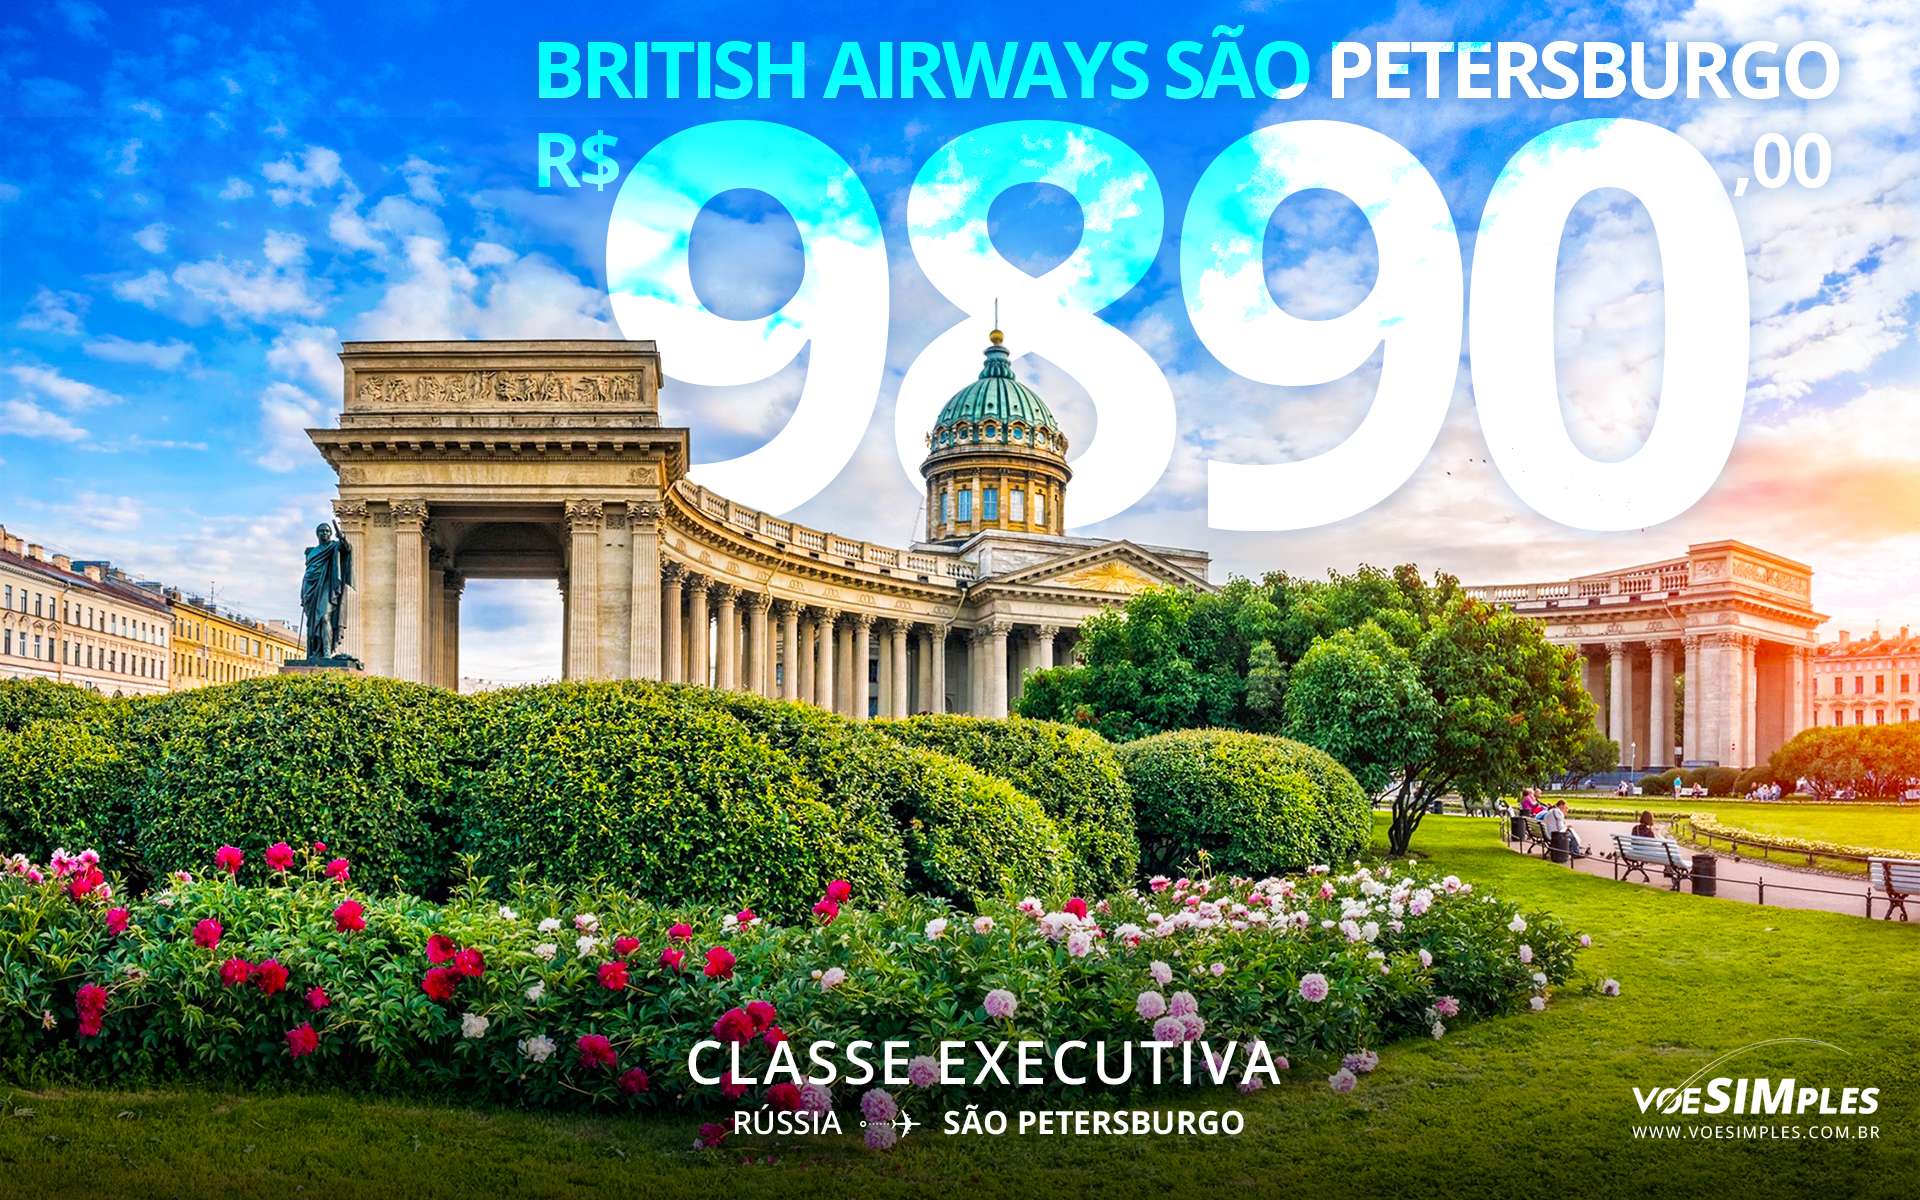 Passagem aérea classe executiva British Airways